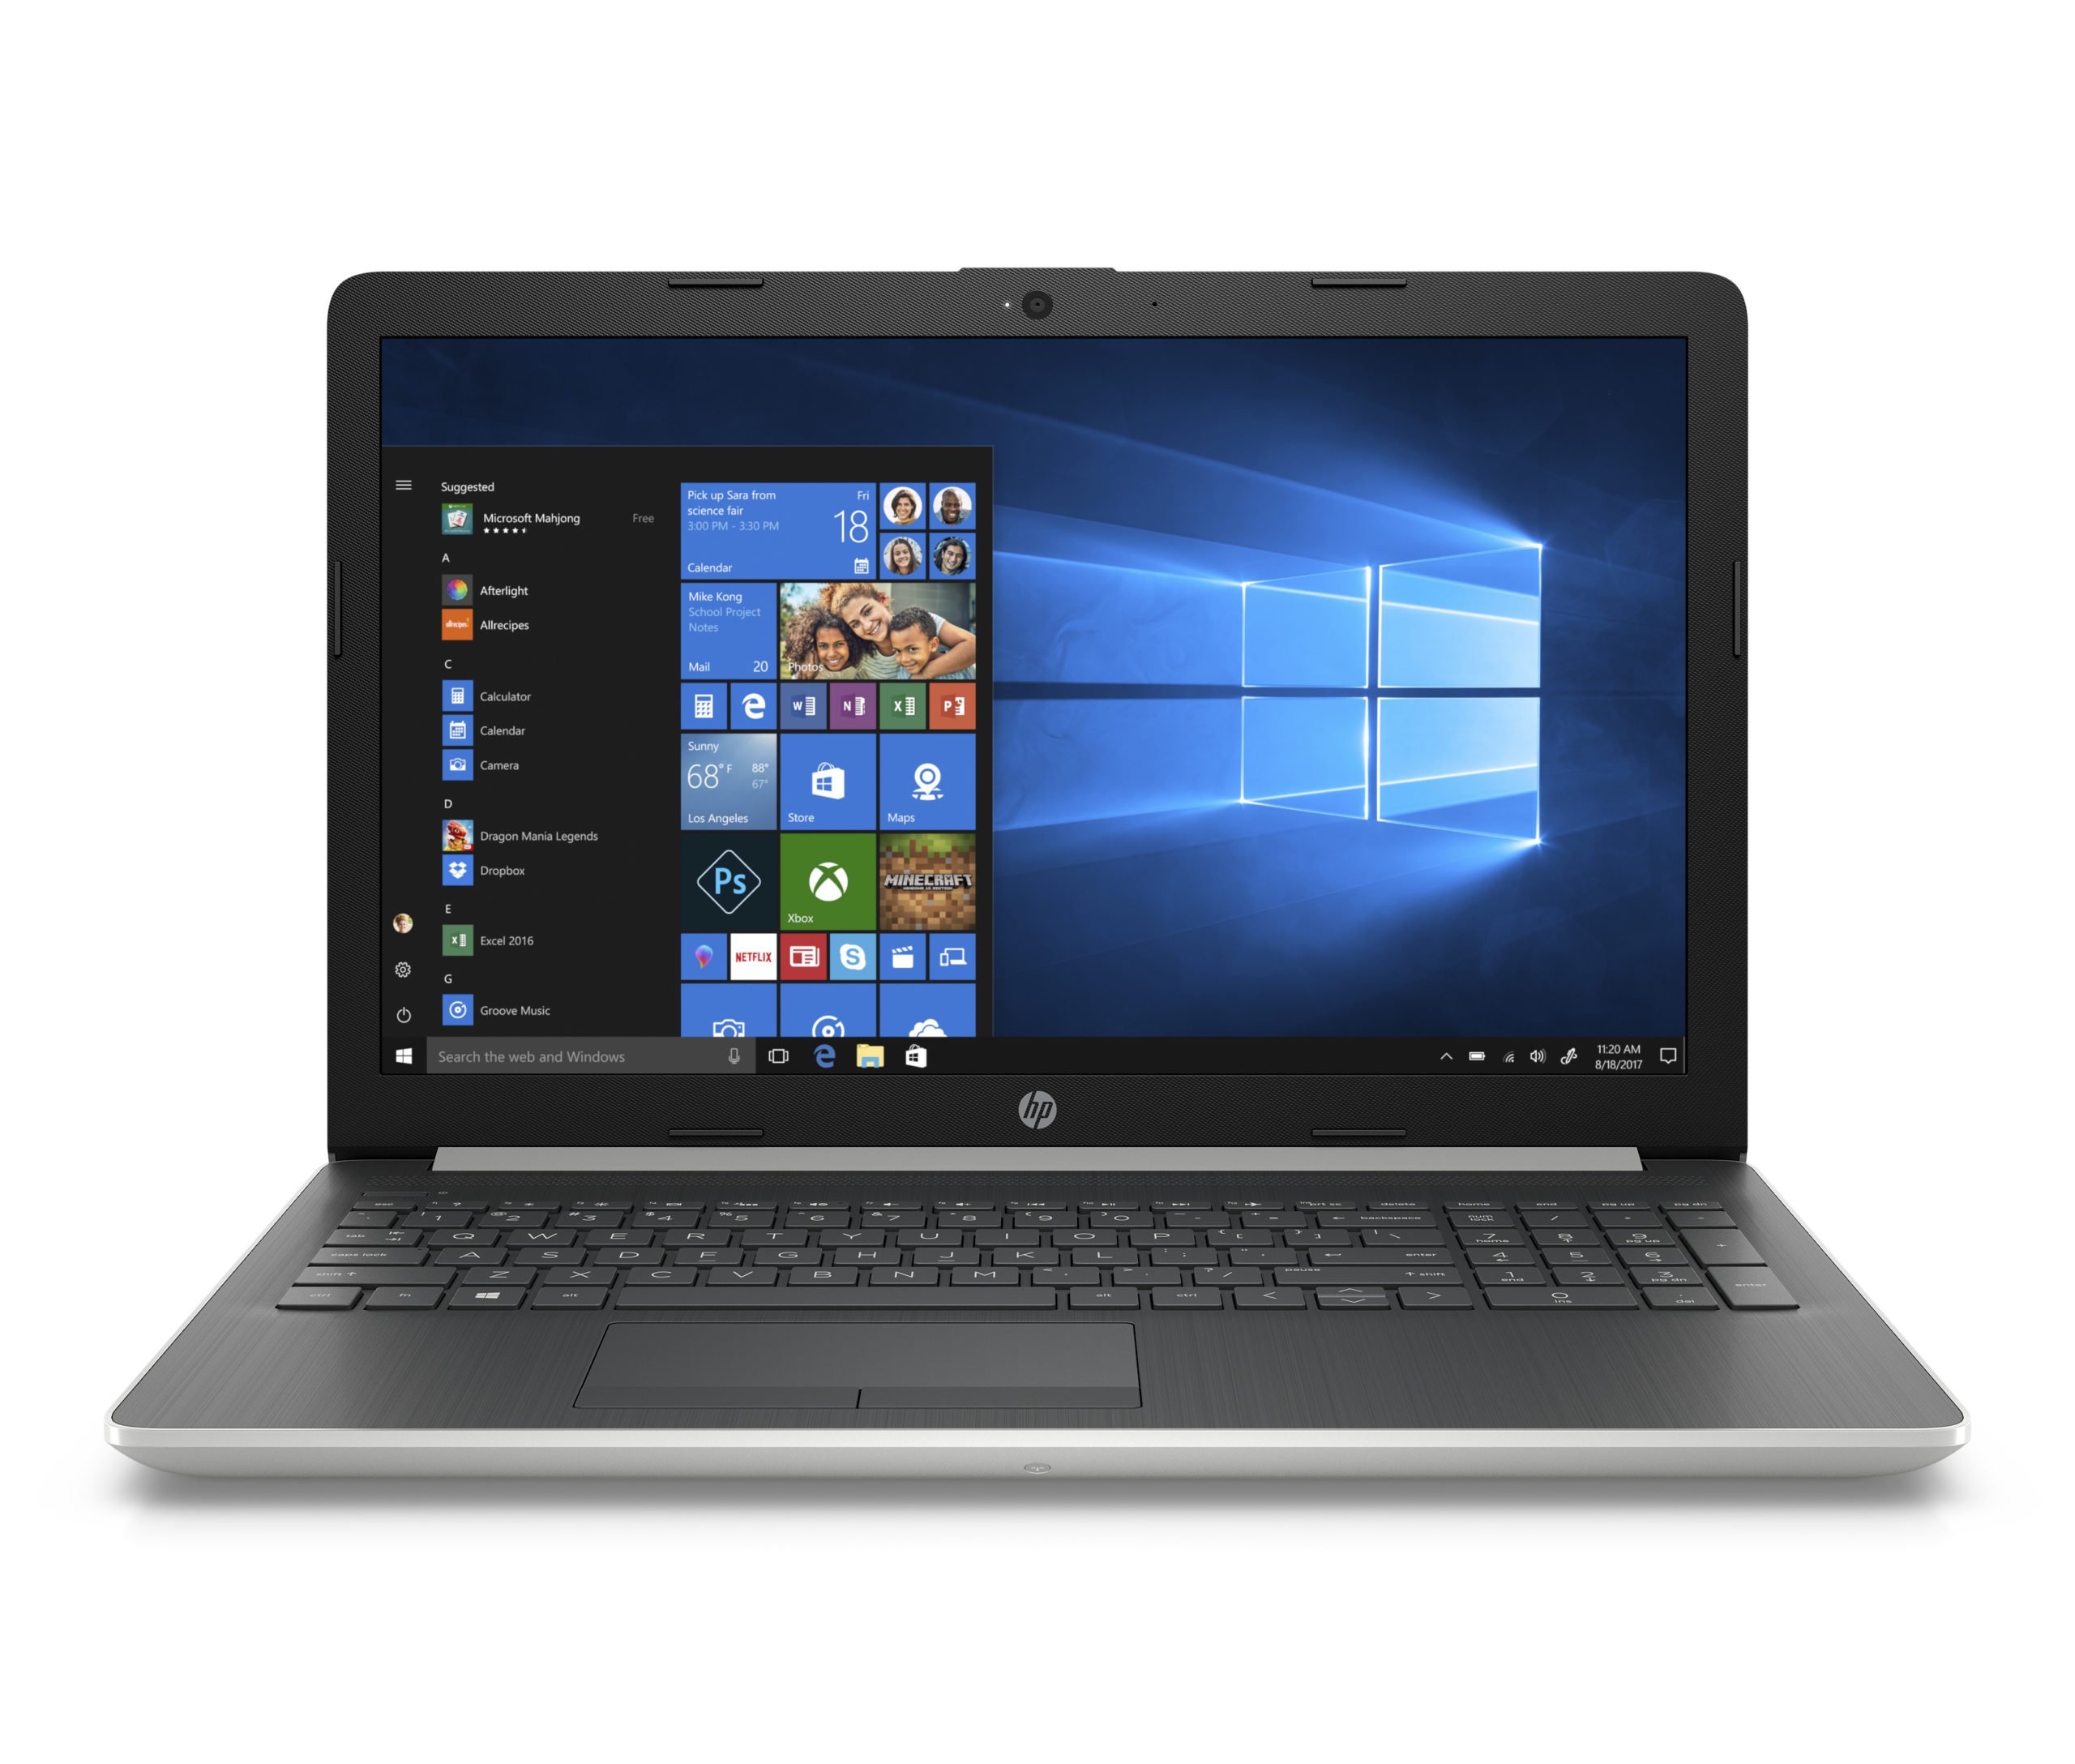 Refurbished HP 15-da0032wm 15.6" Laptop, i3-8130U 4GB RAM, 16GB Intel Optane Memory, 1TB HDD, Silver 2